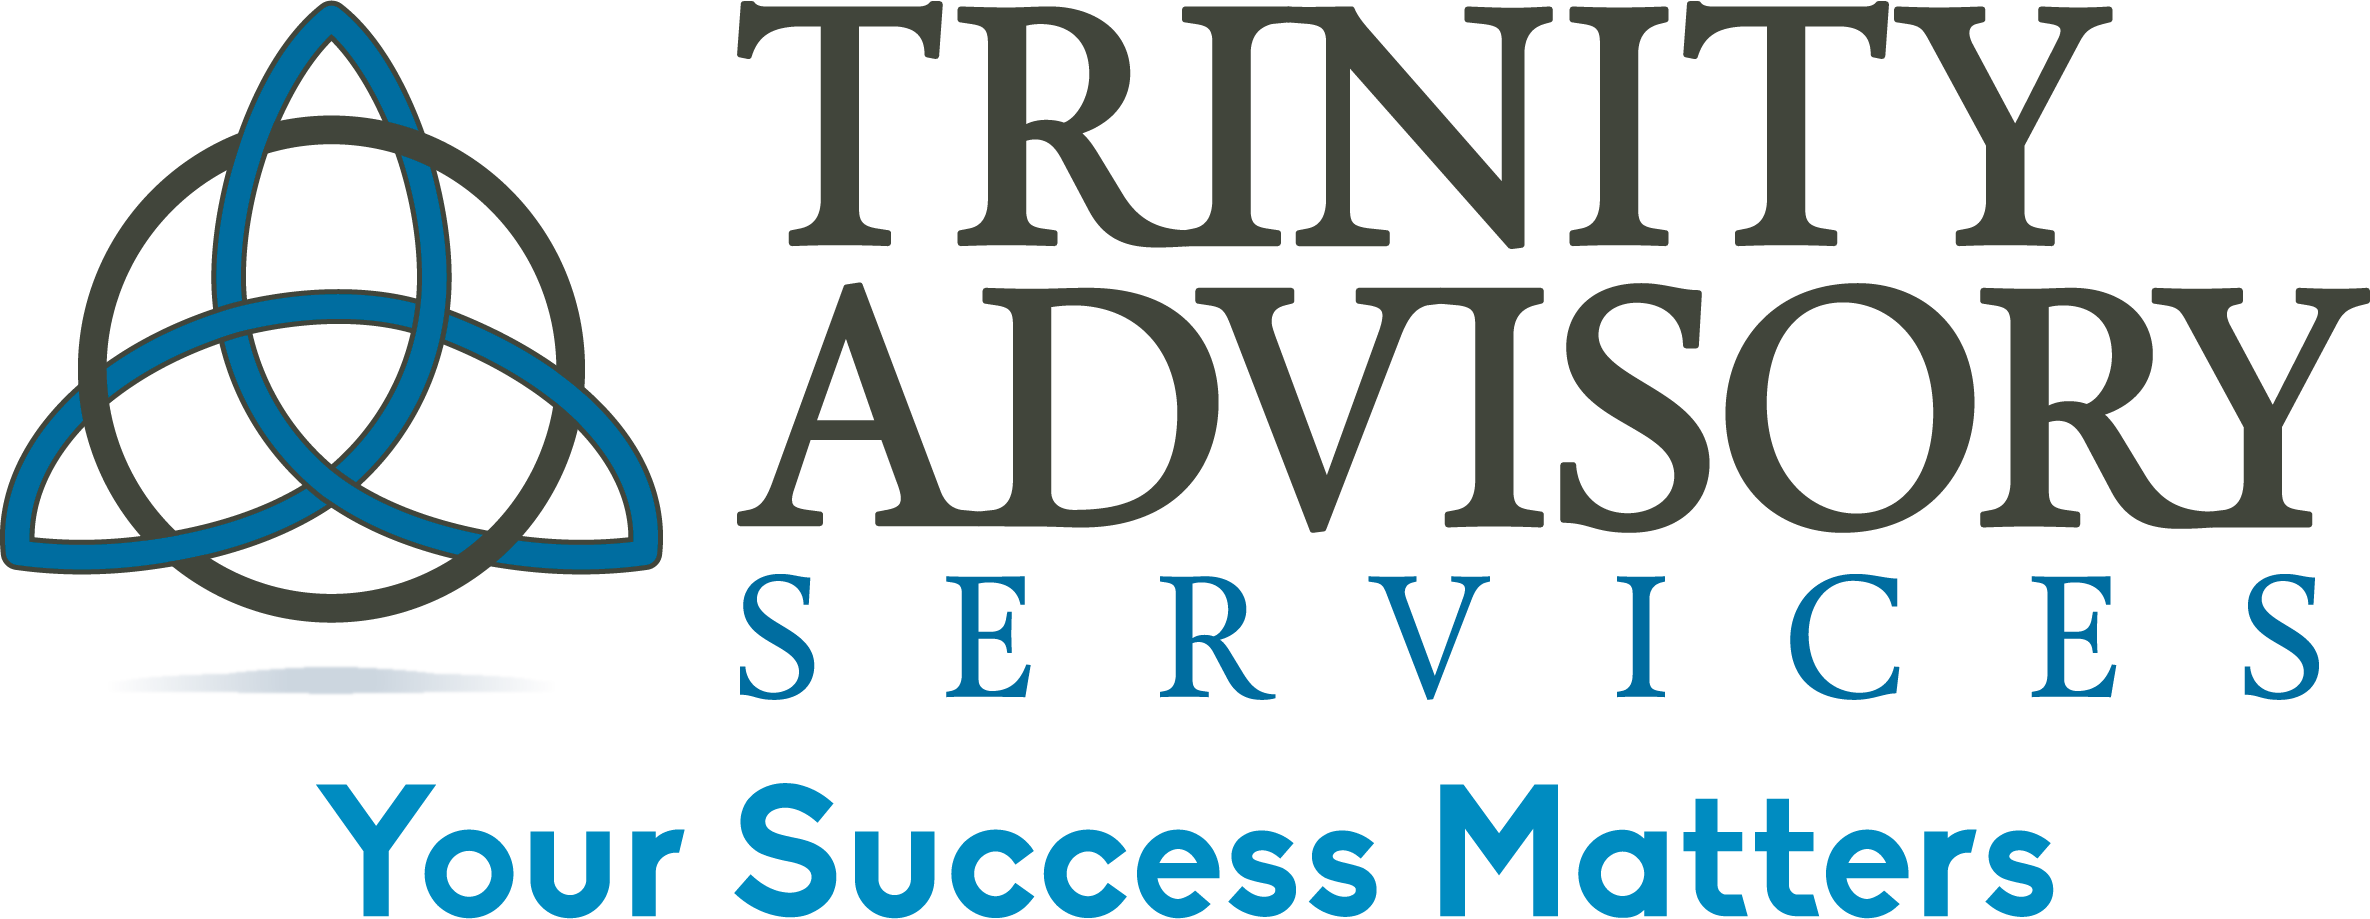 Trinity Advisory Services logo